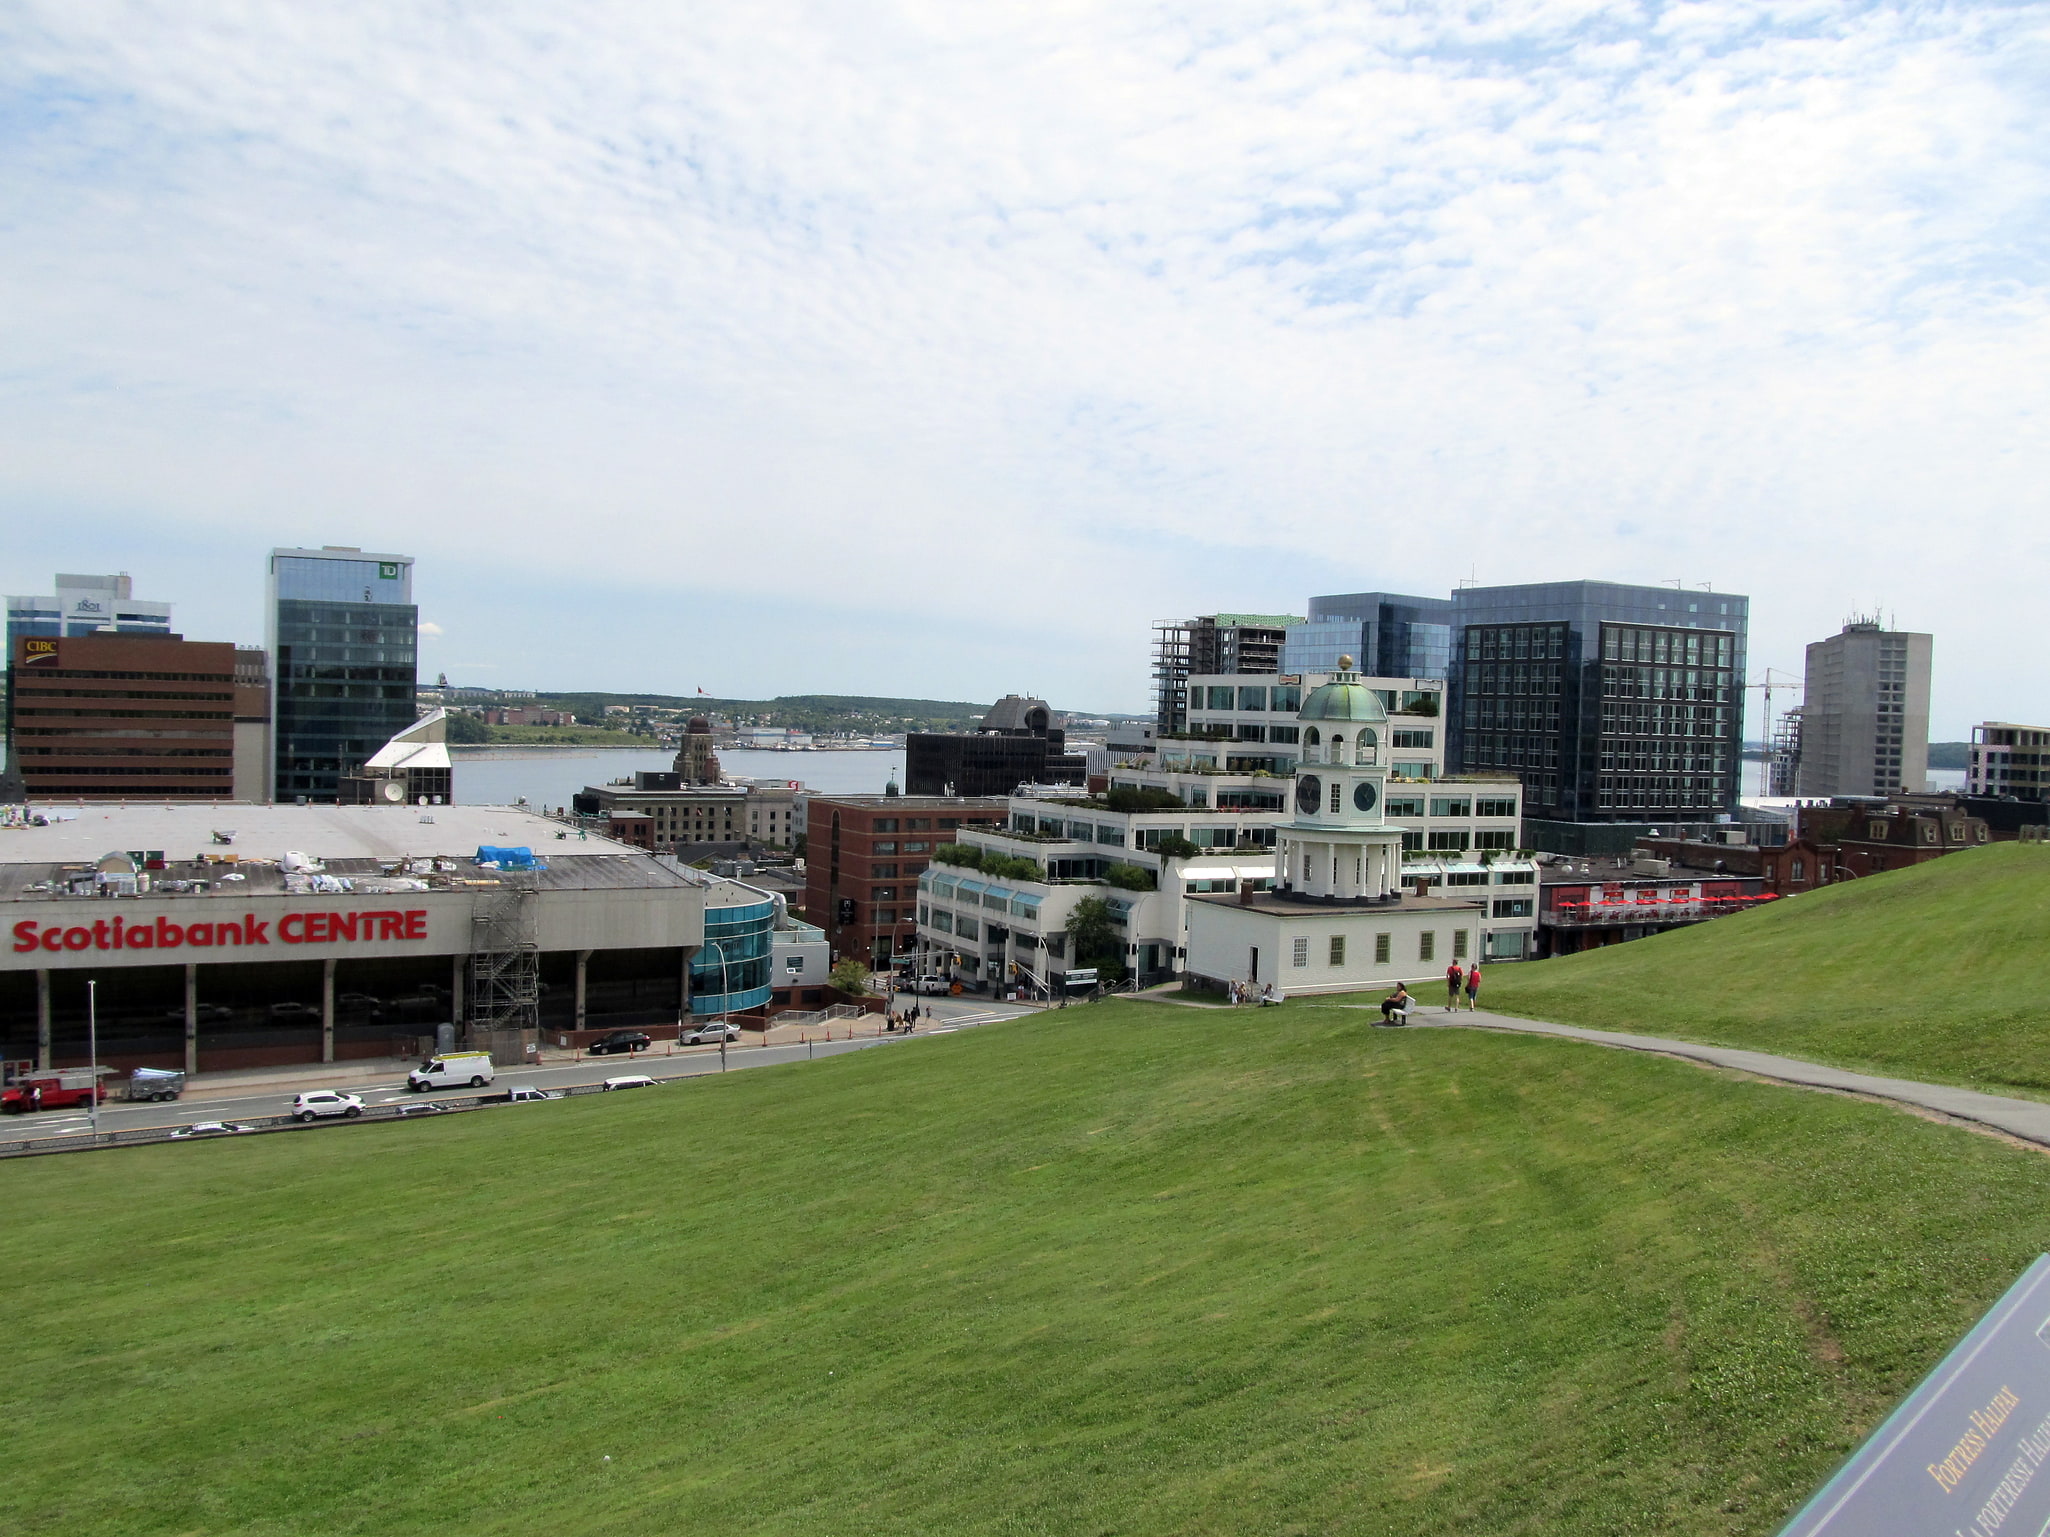 Halifax, Canadá